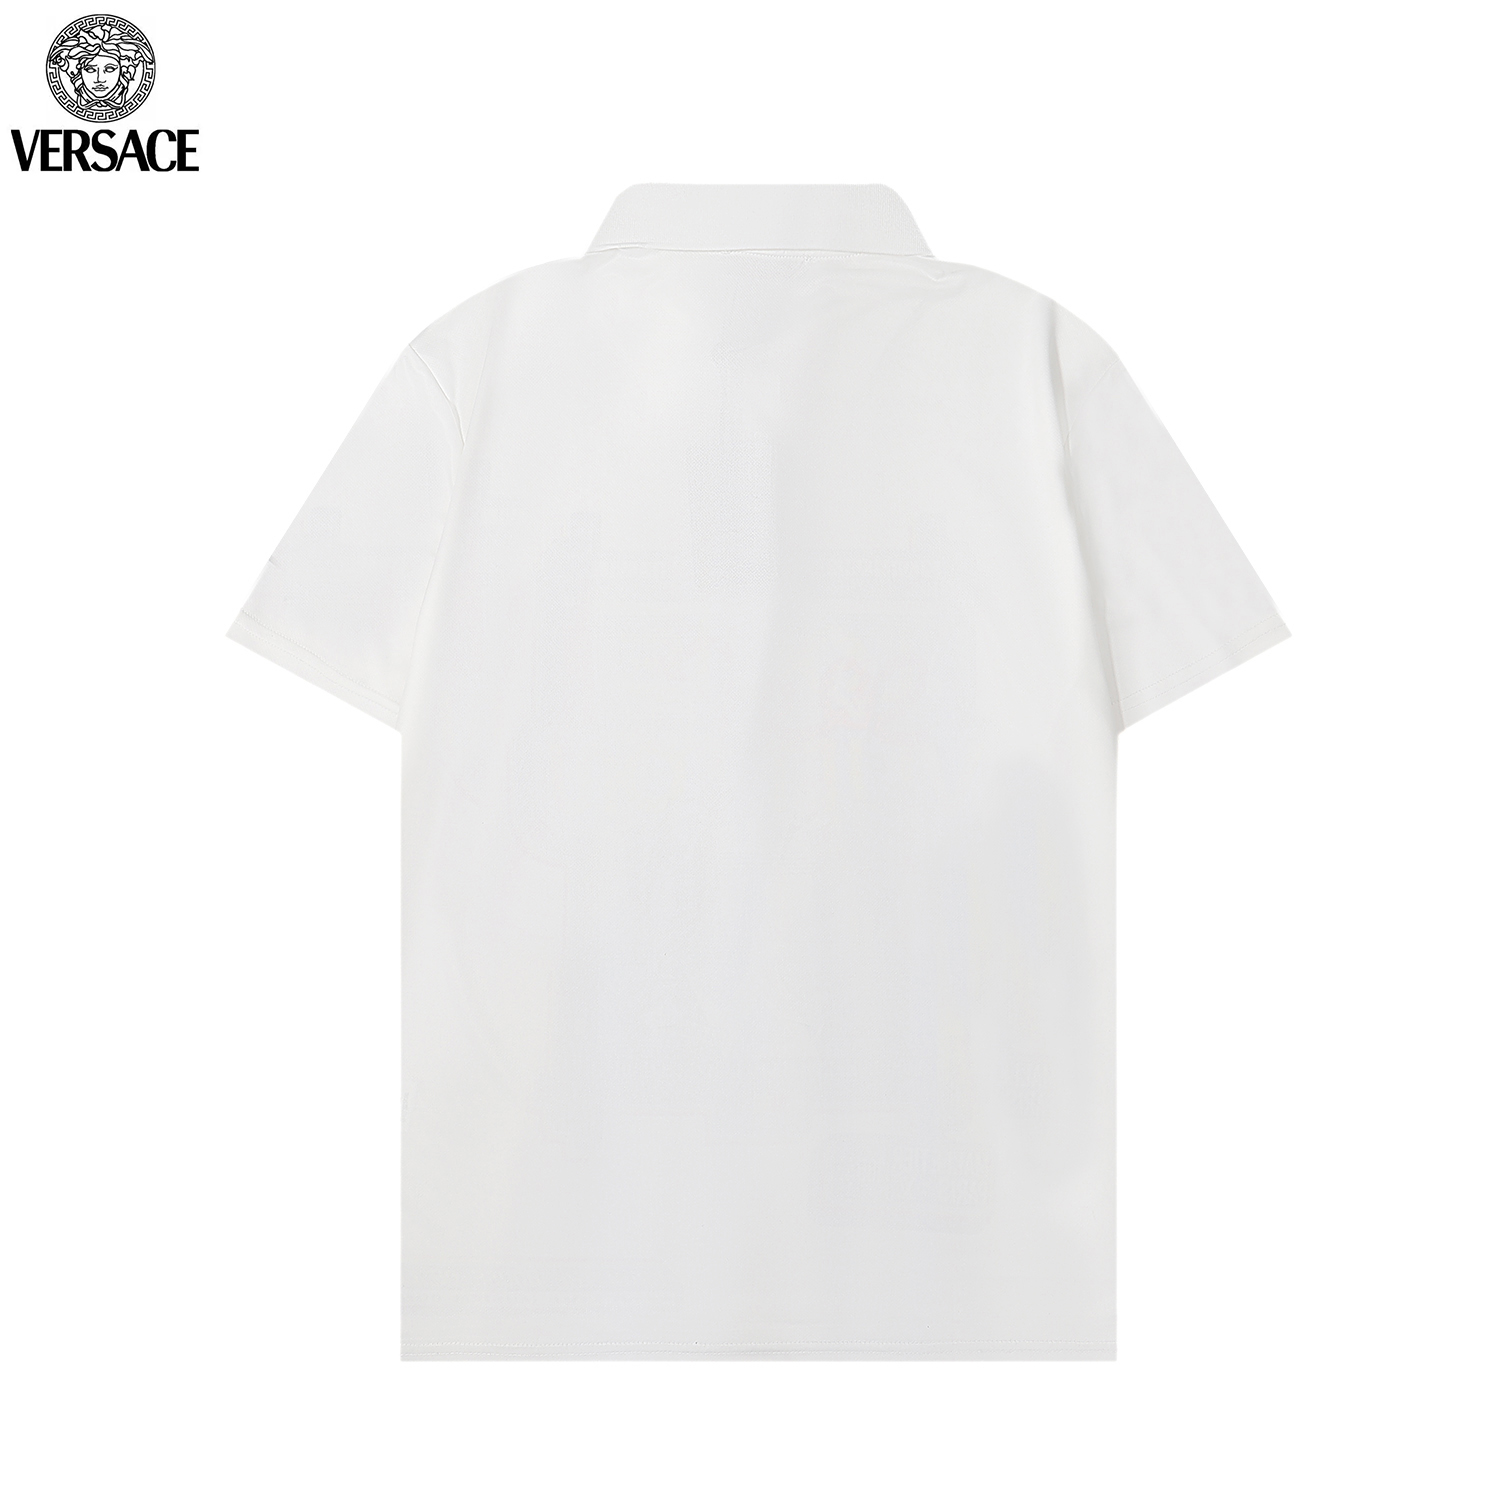 Versace Short Sleeve T Shirts Unisex # 265596, cheap Versace T Shirt Men's Versace, only $27!